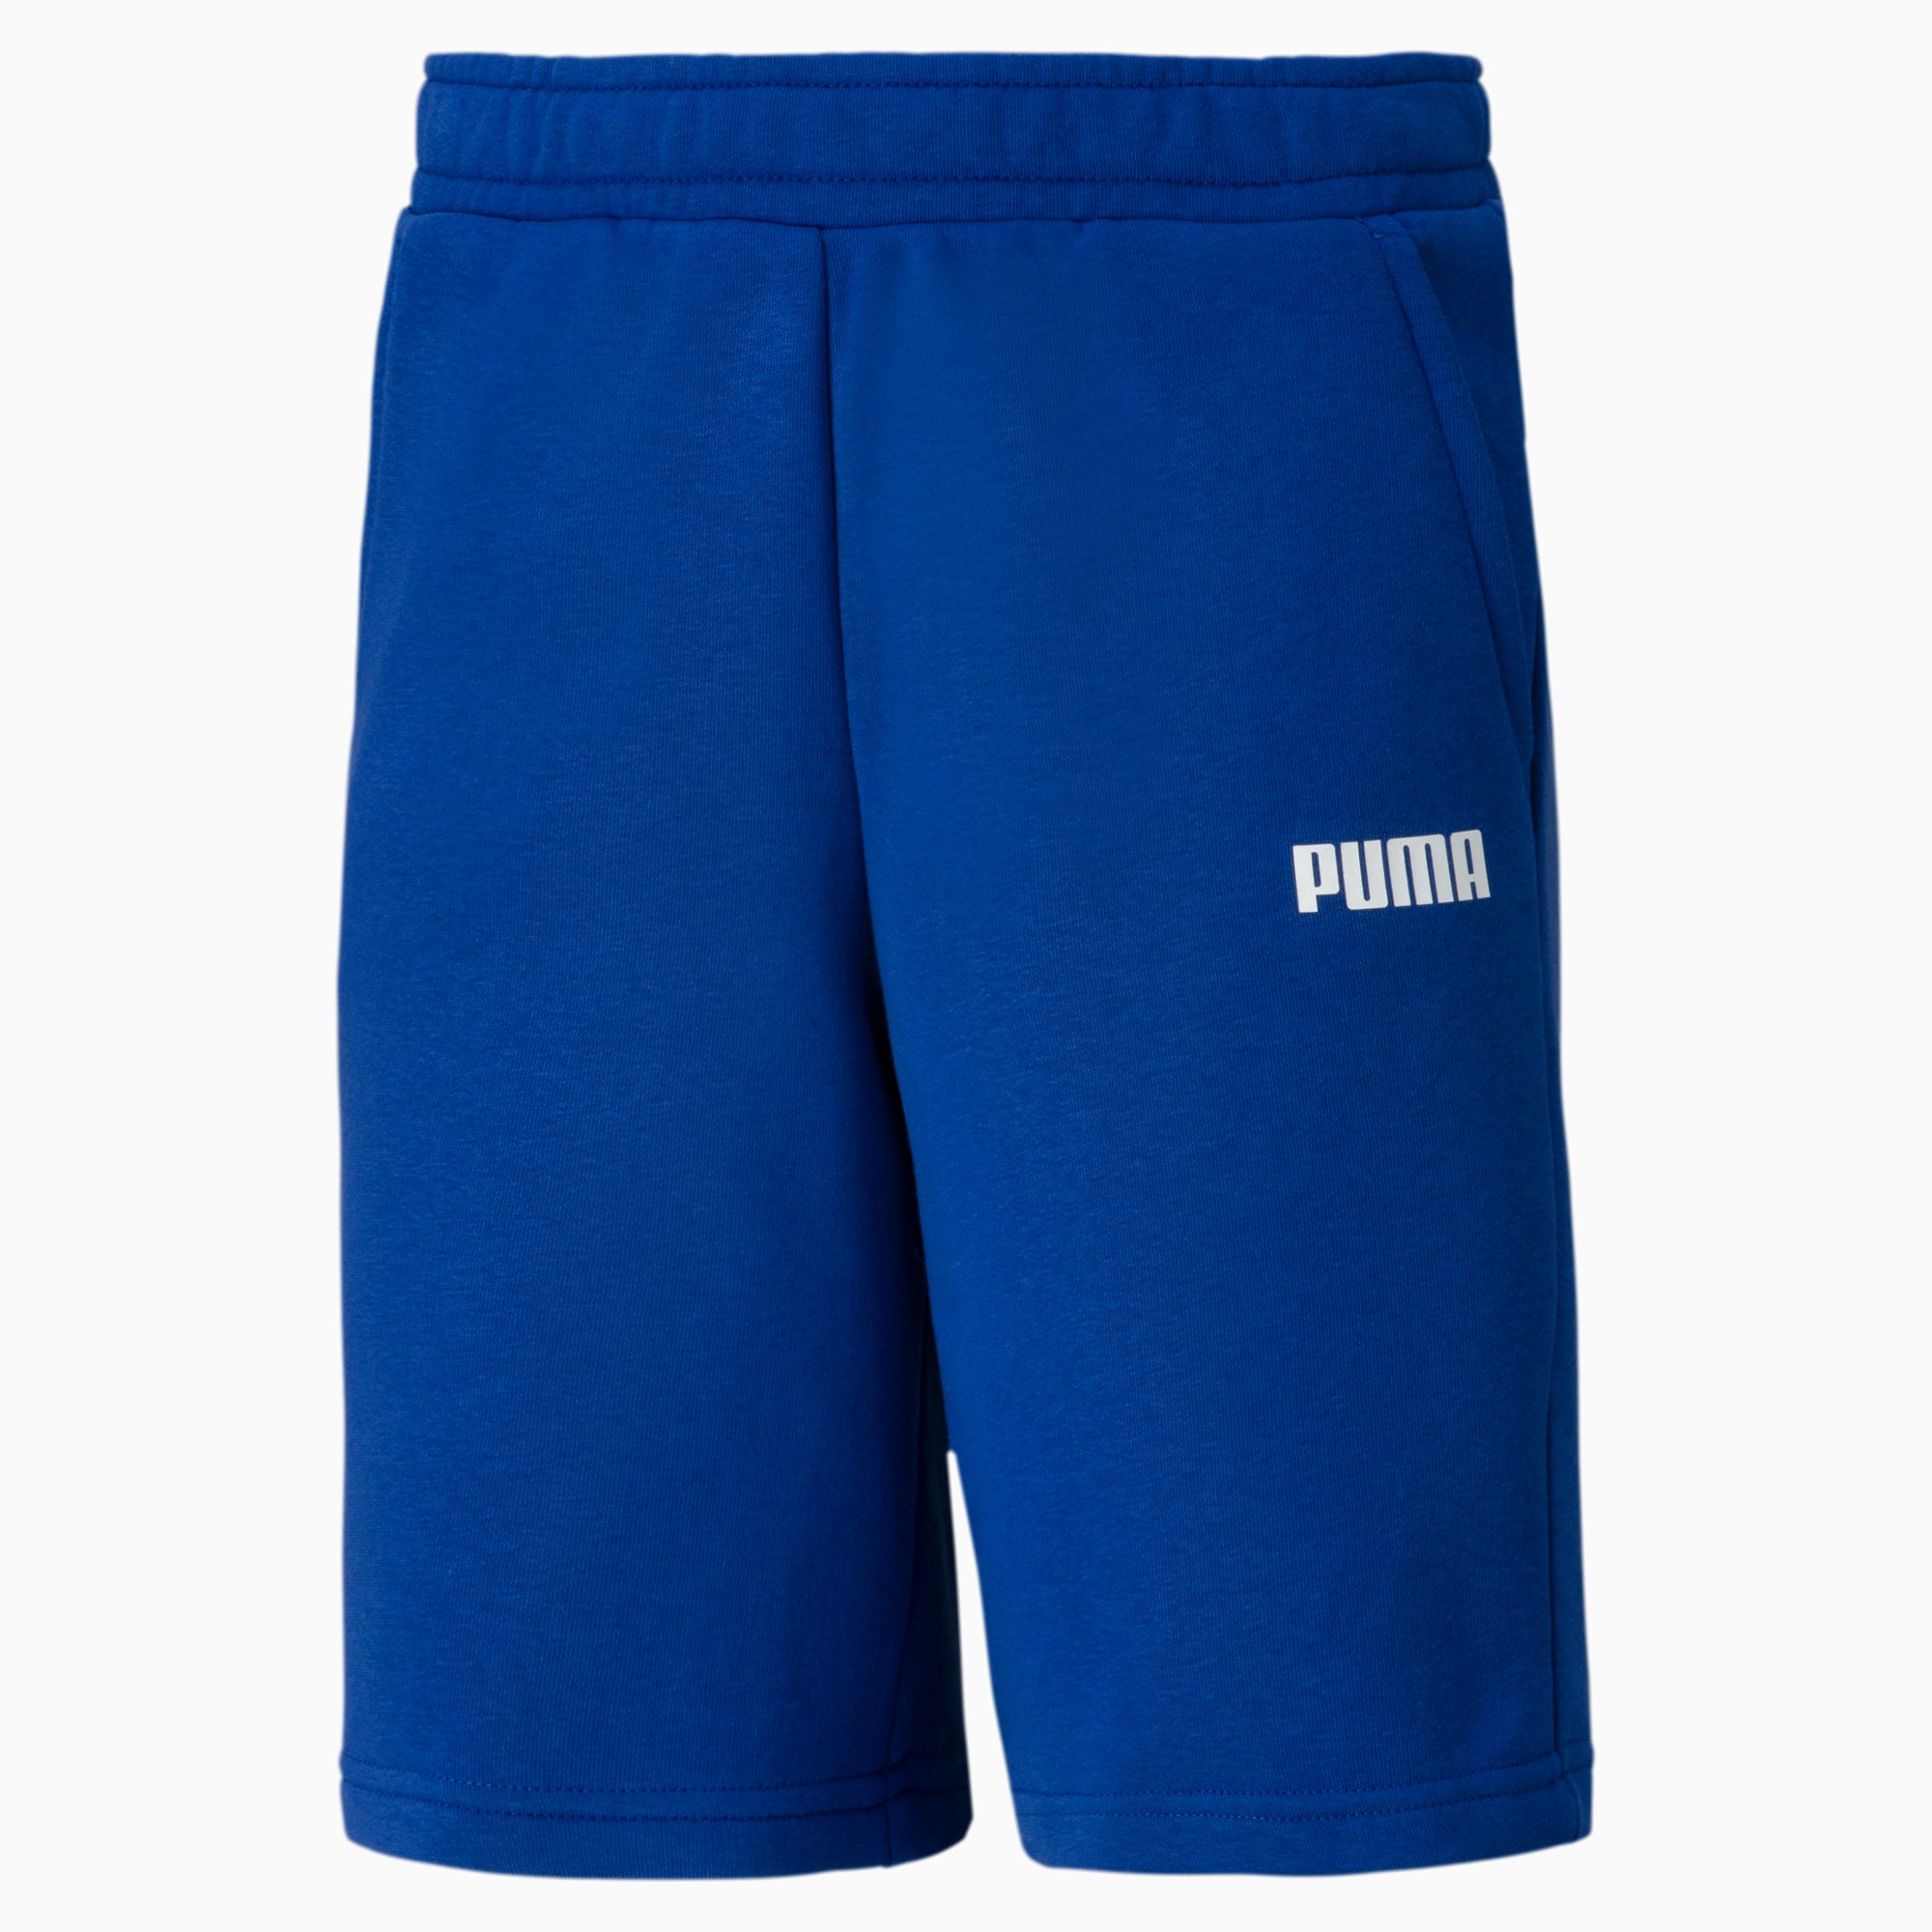 puma boys shorts